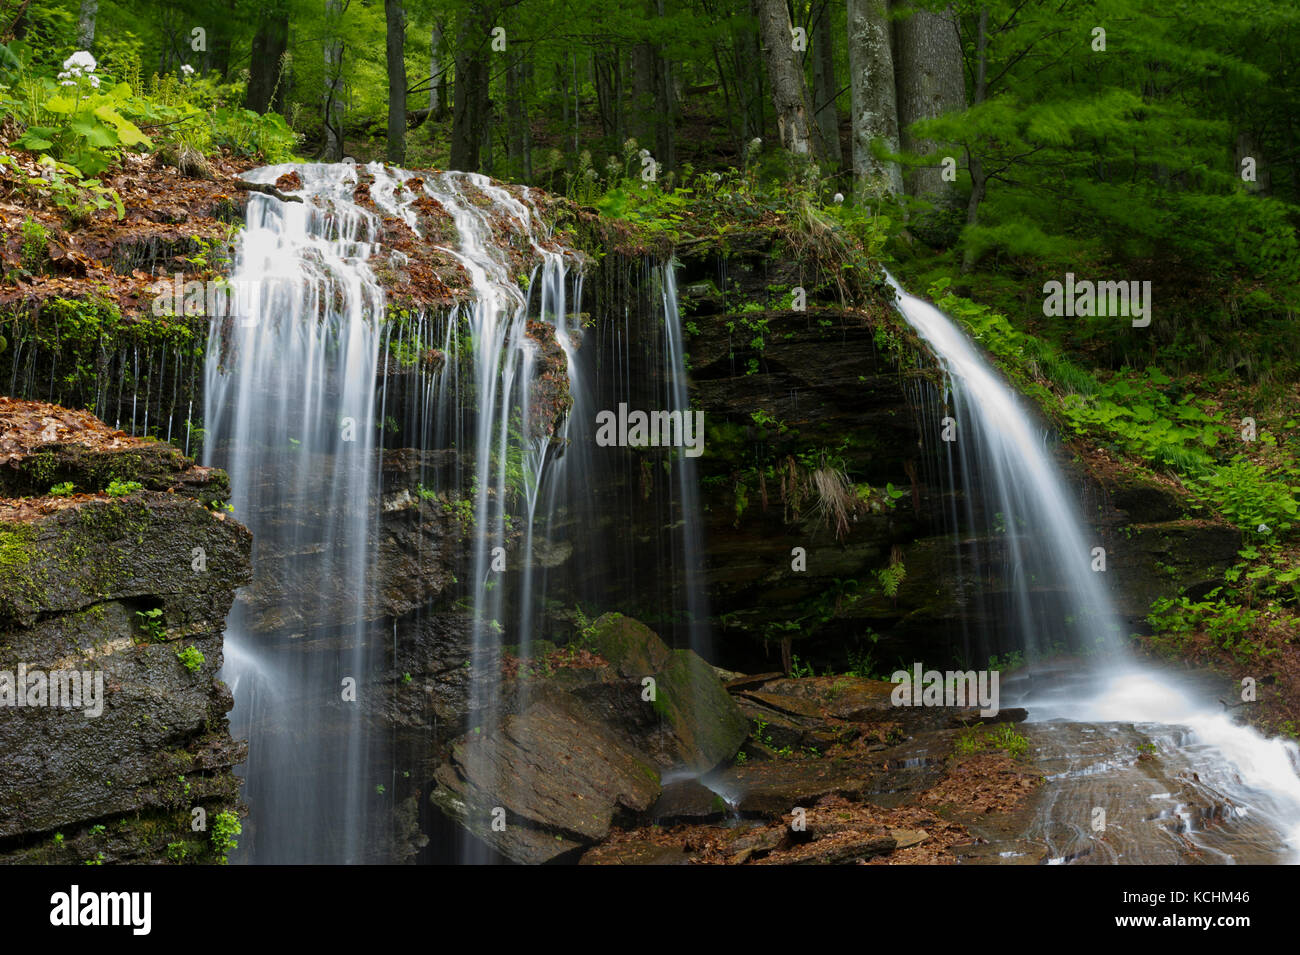 Nationalpark Domogled / Rumänien - Wasserfall im primären Buchenwald in Iauna Craiove UNESCO-Welterbe-Teil. Stockfoto